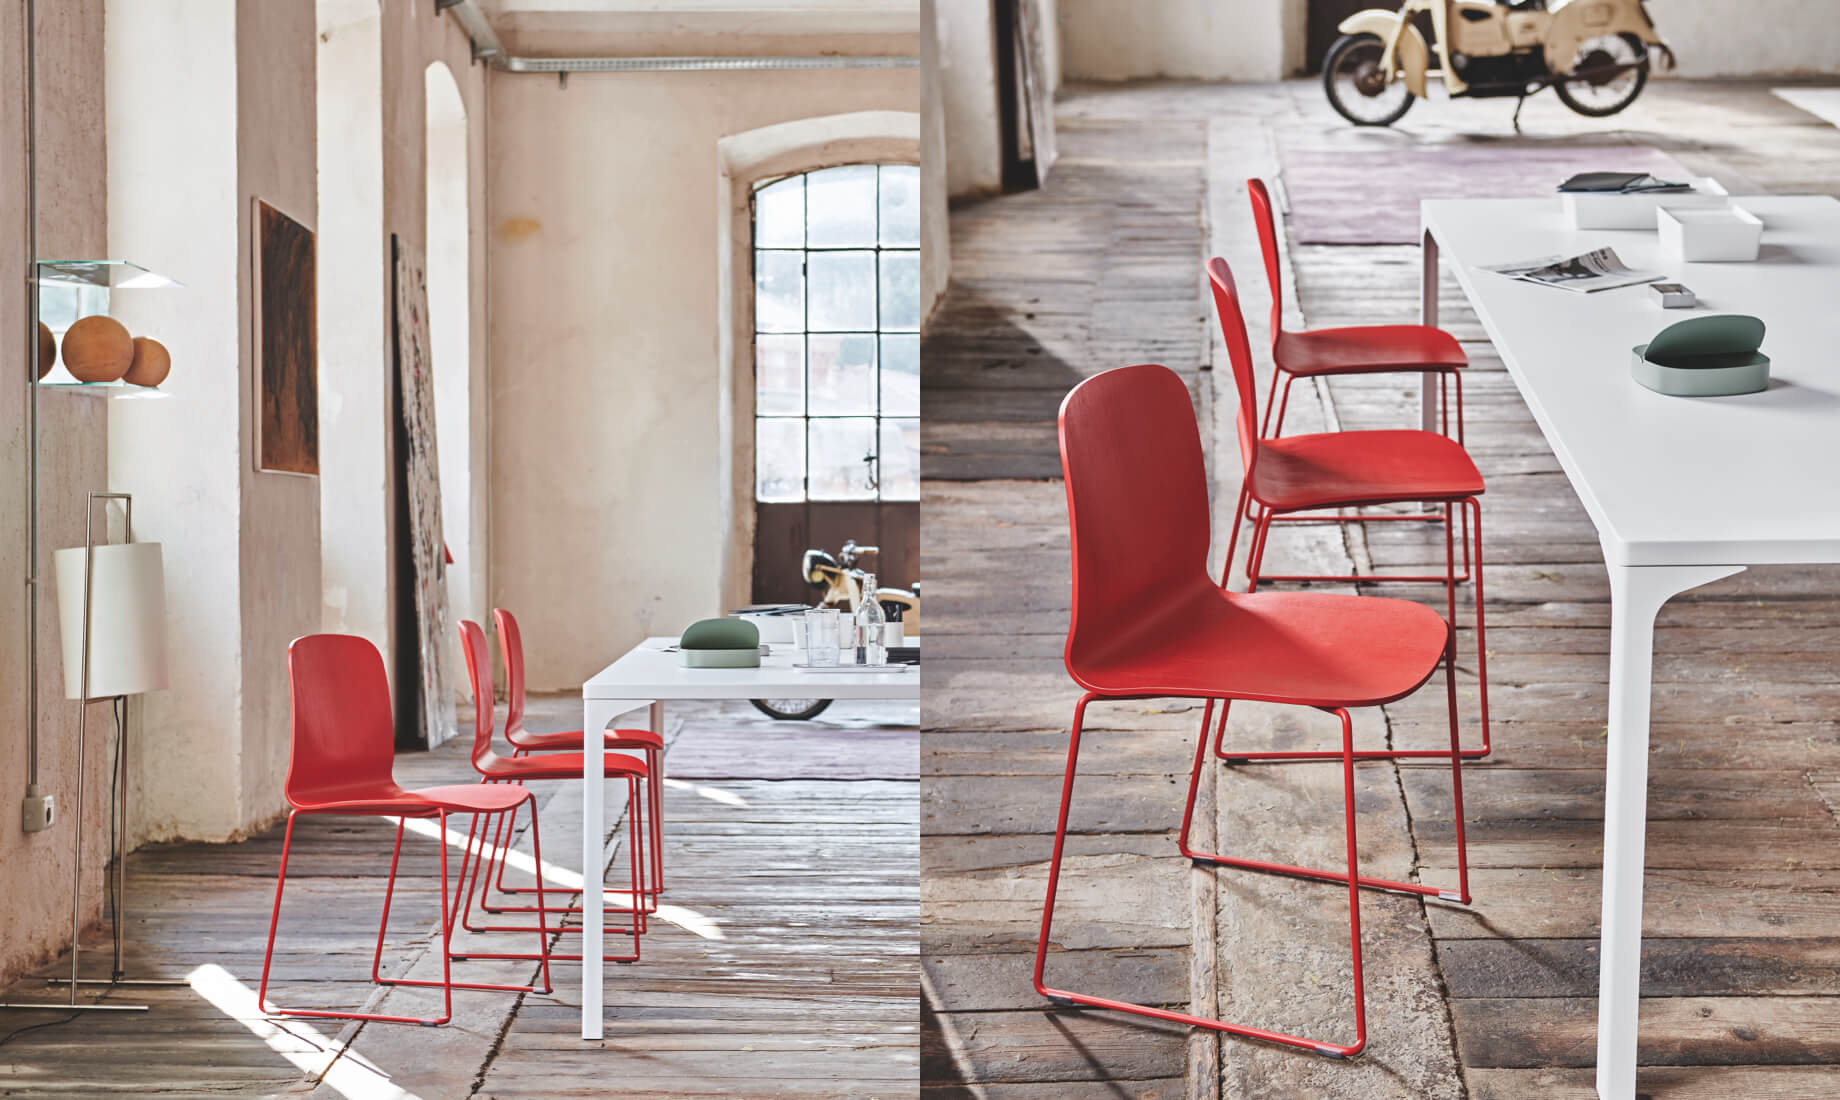 Liù chairs, Archirivolto design. Armando table, design Balutto Associati.